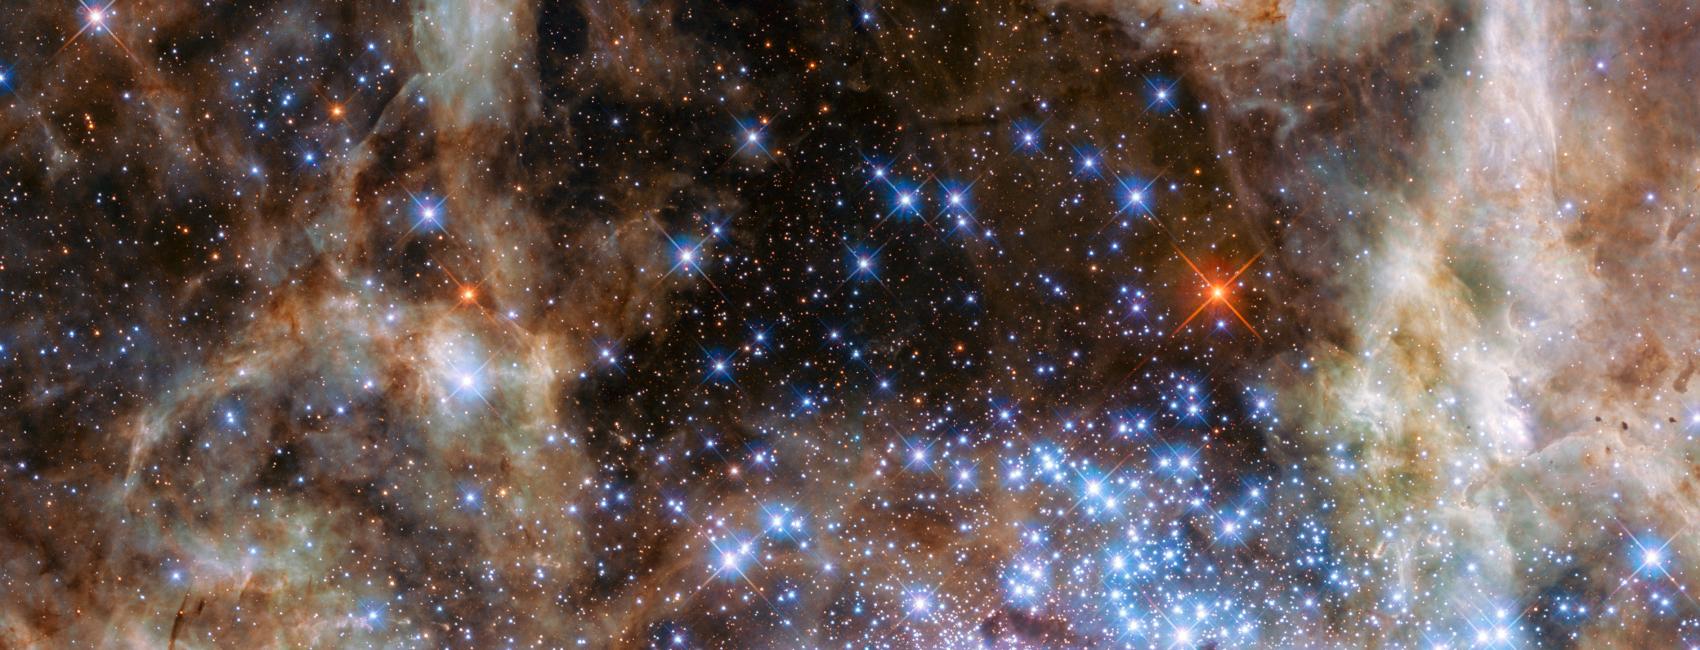 hubble space telescope observation nat nebula